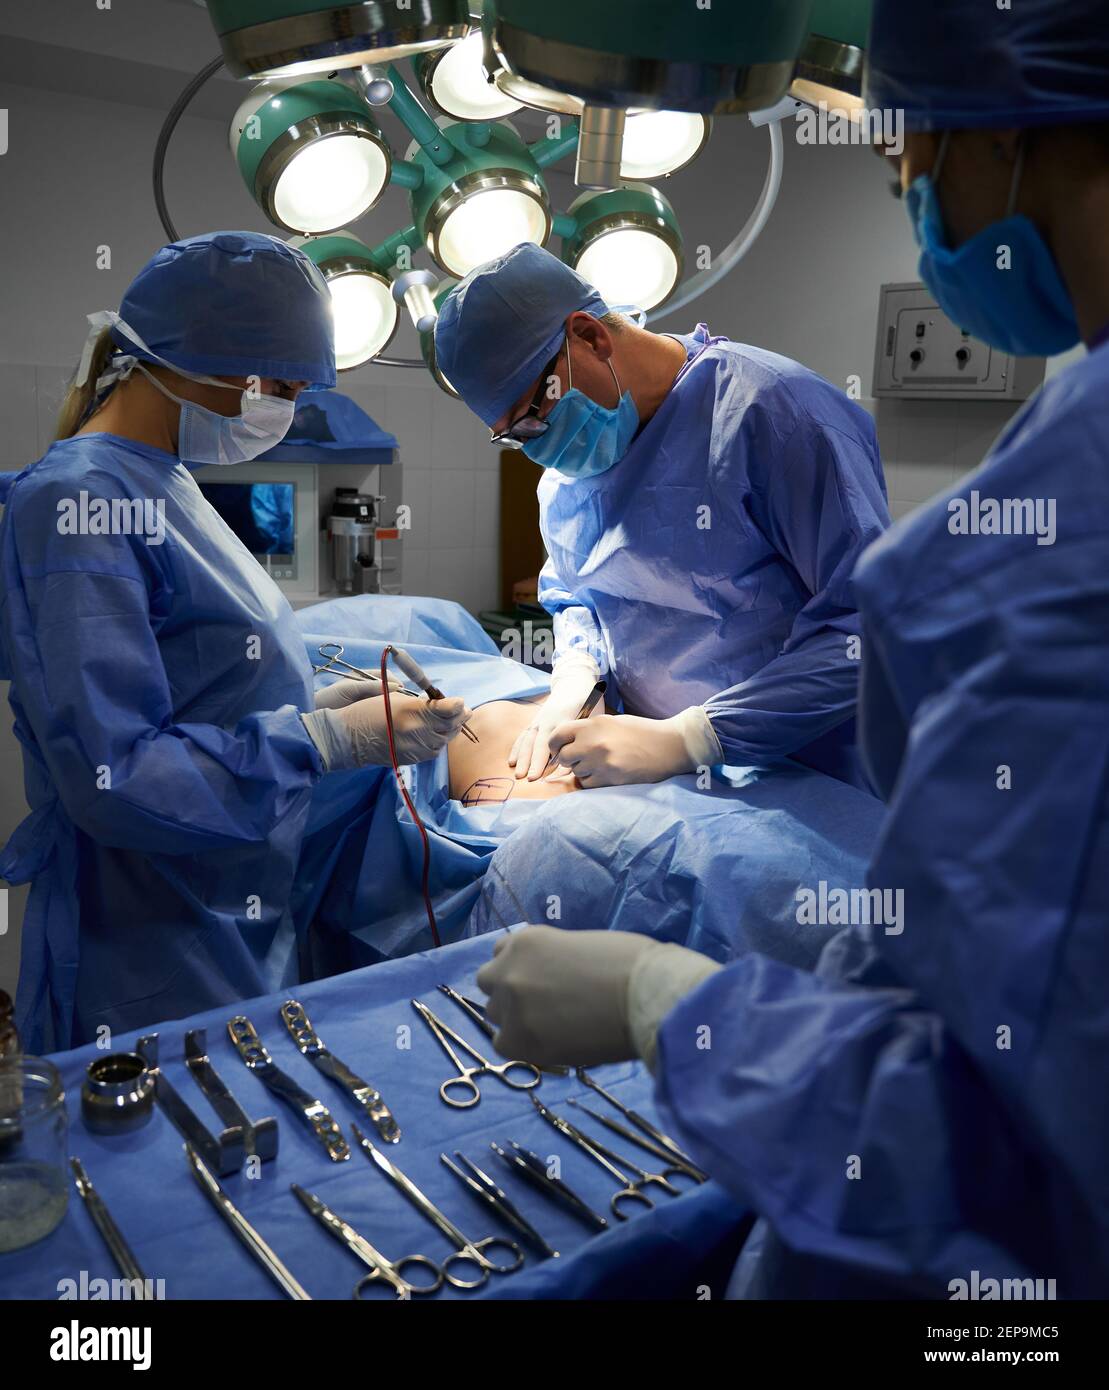 Operationsteam in sterilen Handschuhen und Schutzmasken tun ästhetische Chirurgie im Operationssaal. Assistent steht neben OP-Tisch mit medizinischen Werkzeugen. Konzept der Medizin und plastische Chirurgie. Stockfoto